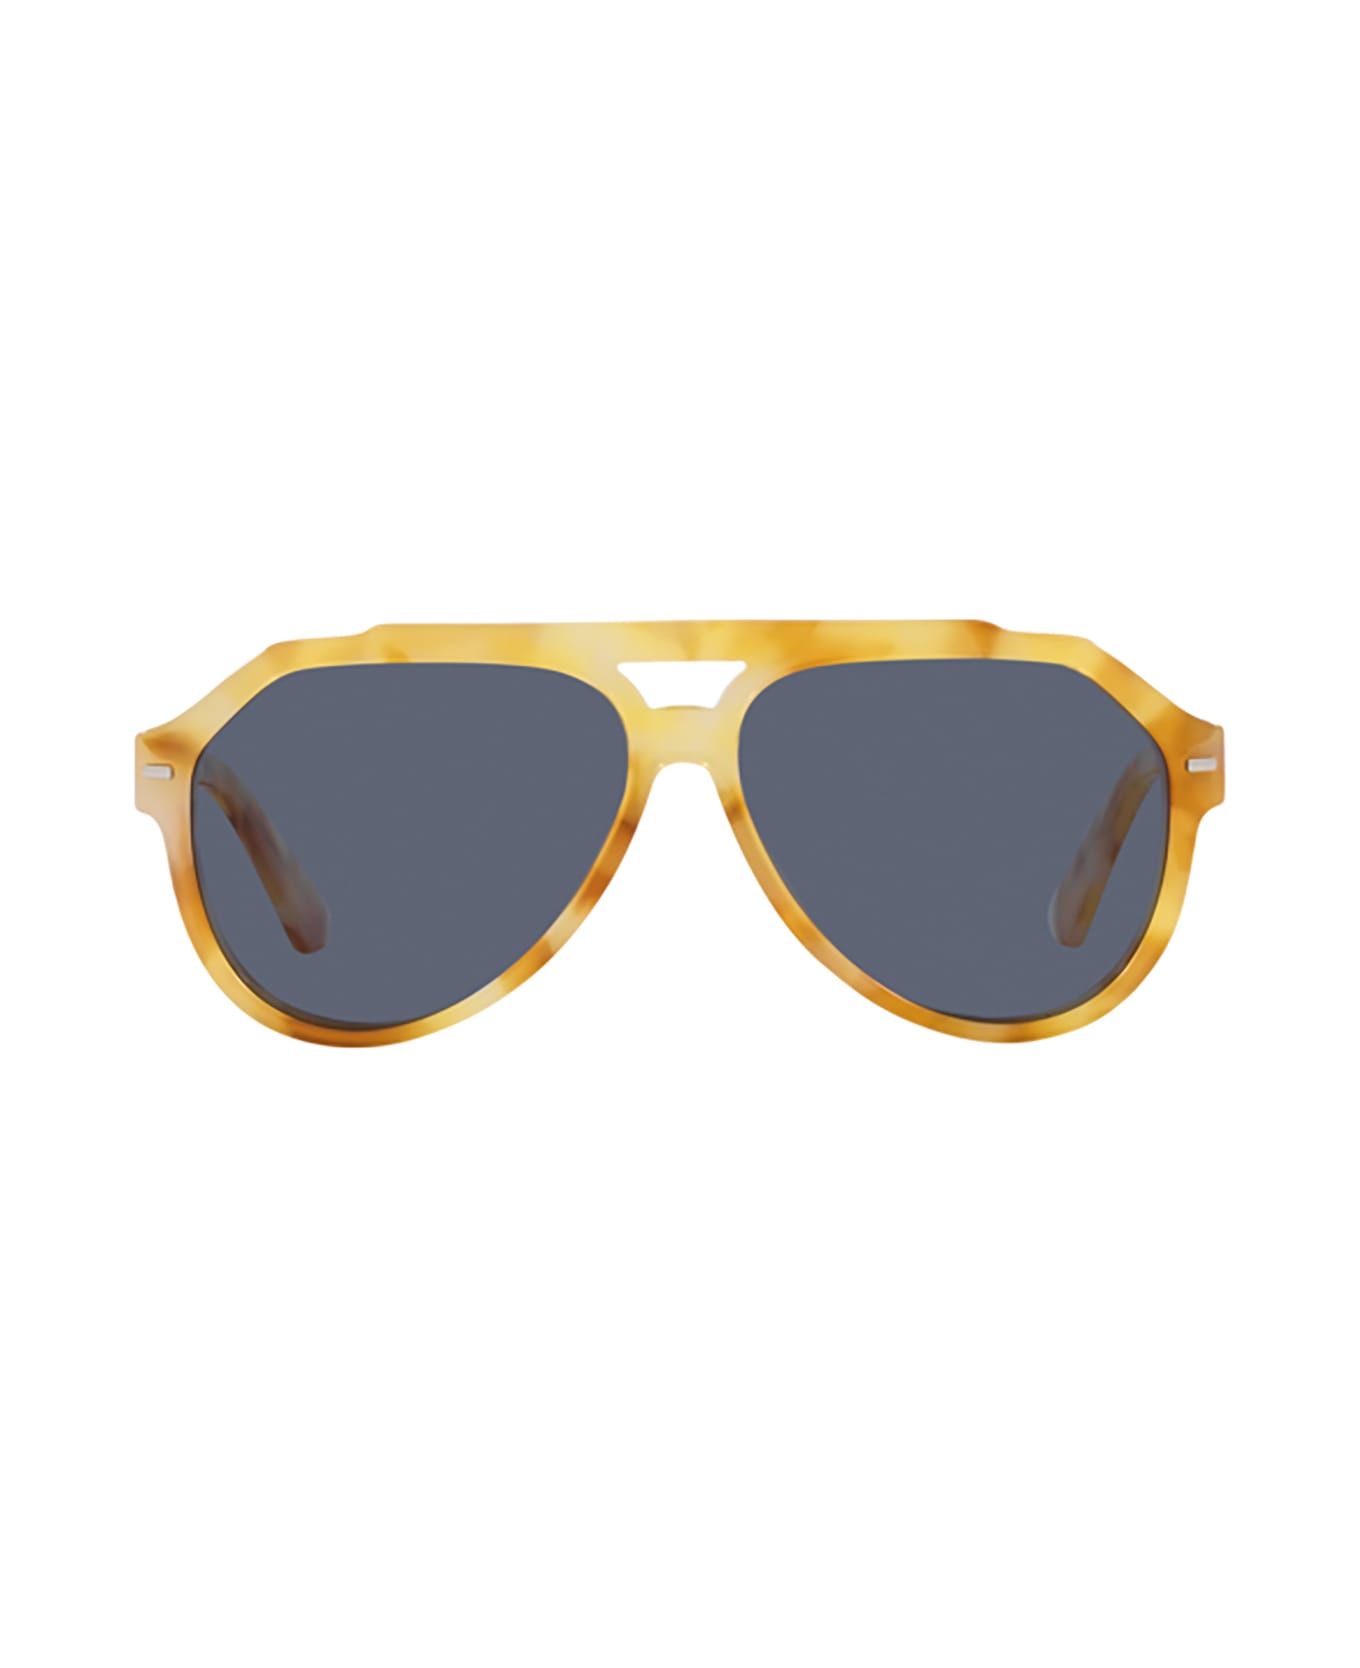 Dolce & Gabbana Eyewear Dg4452 Yellow Tortoise Sunglasses - Yellow tortoise